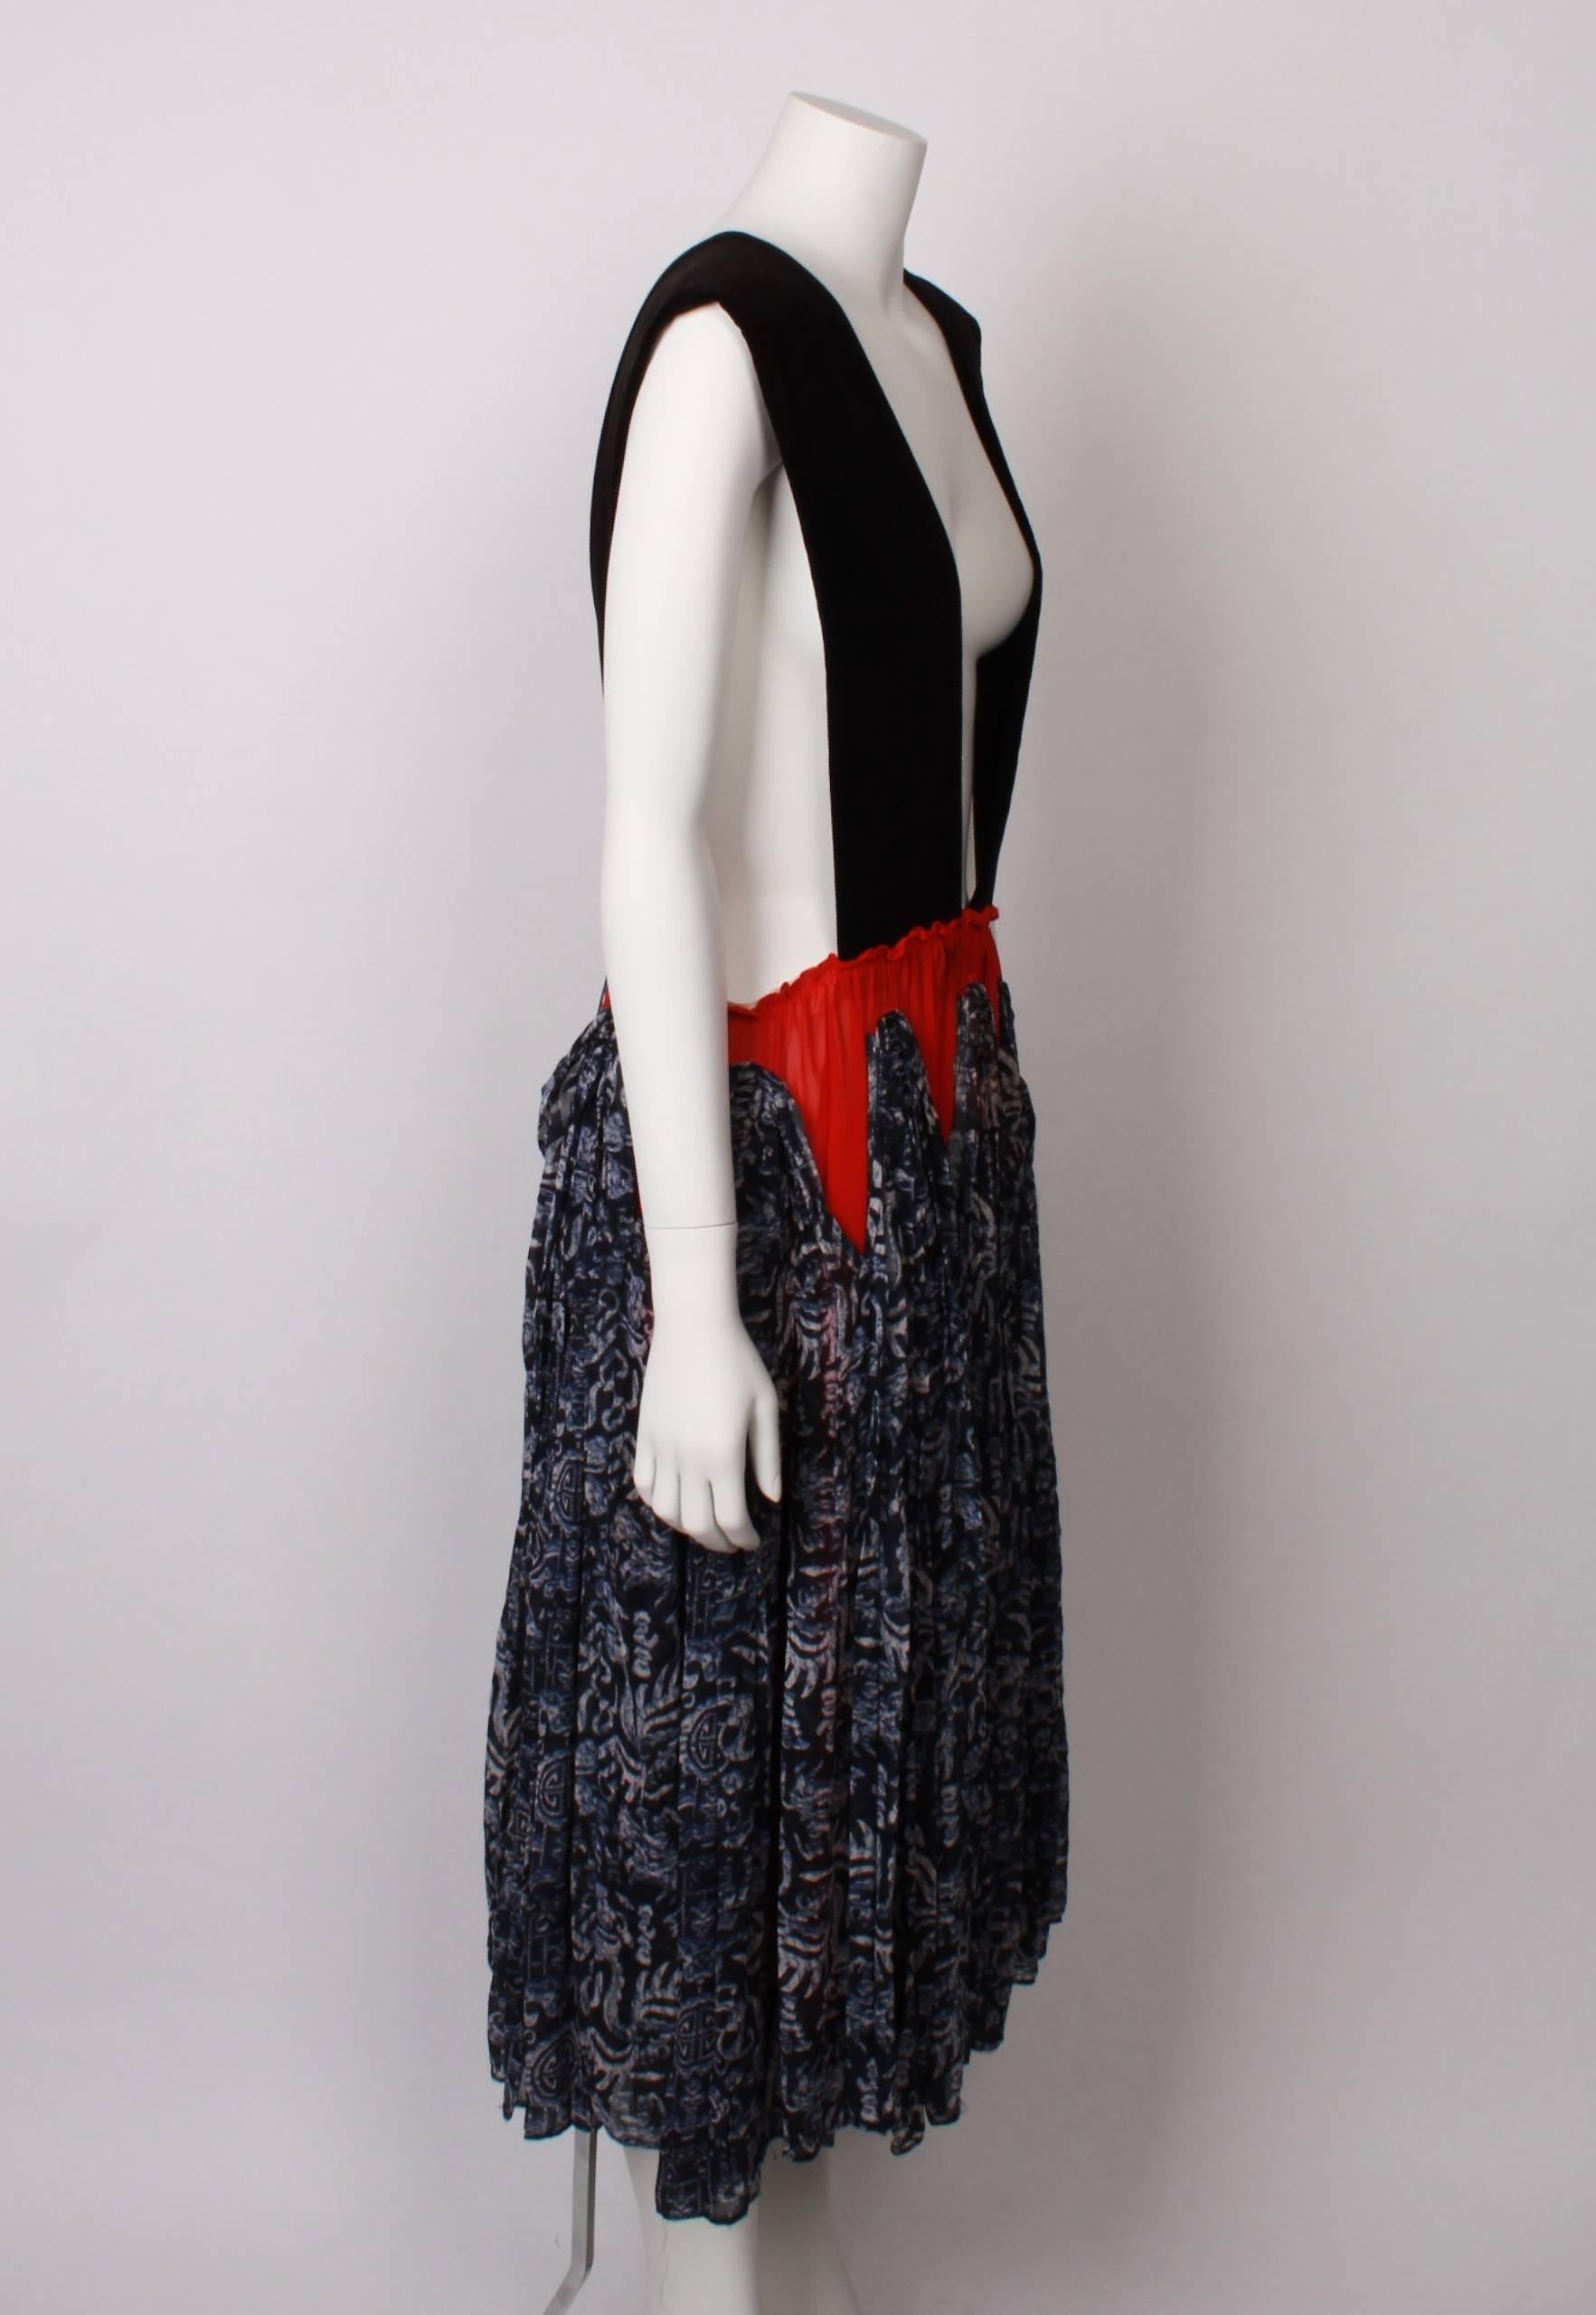 shibori print dress